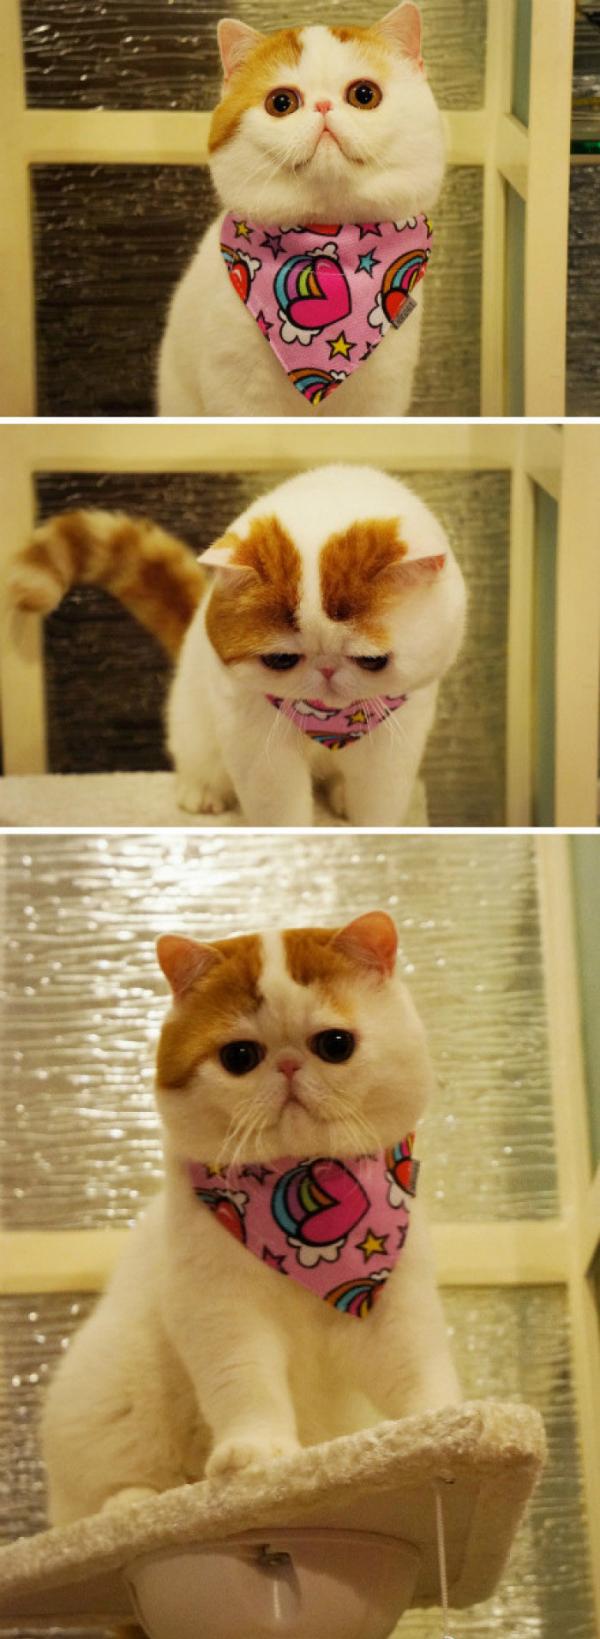 网友分享的一组非常可爱的加菲猫